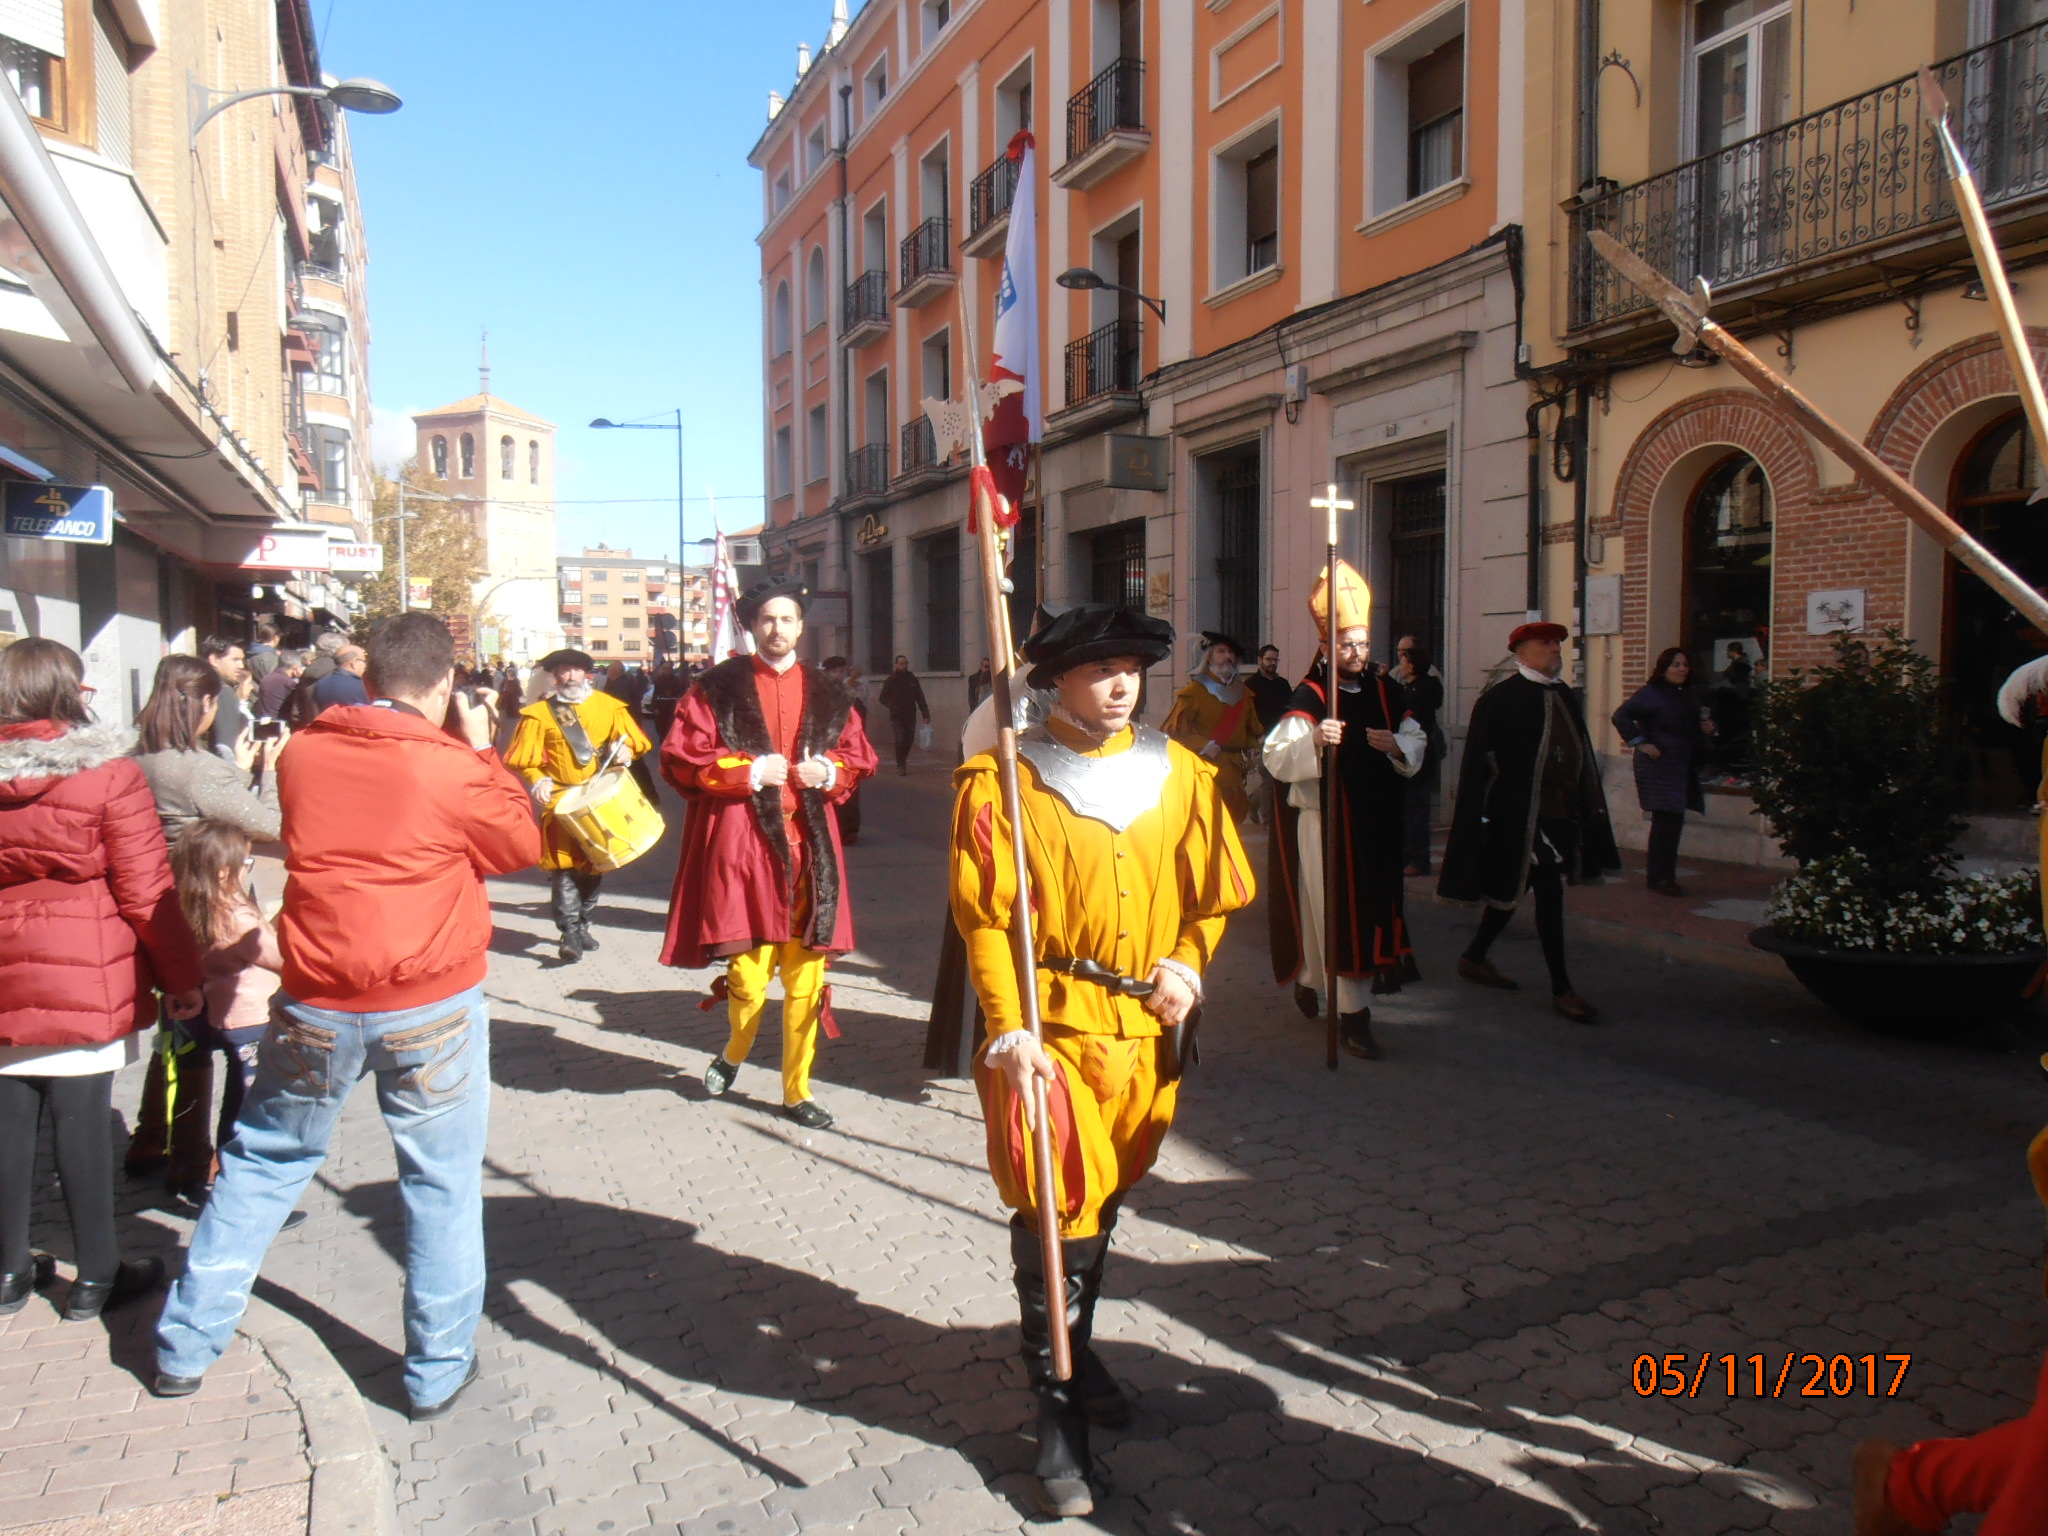 Carlos V llega el domingo. Medina del Campo recreará la visita del ilustre emperador a la villa en 1556